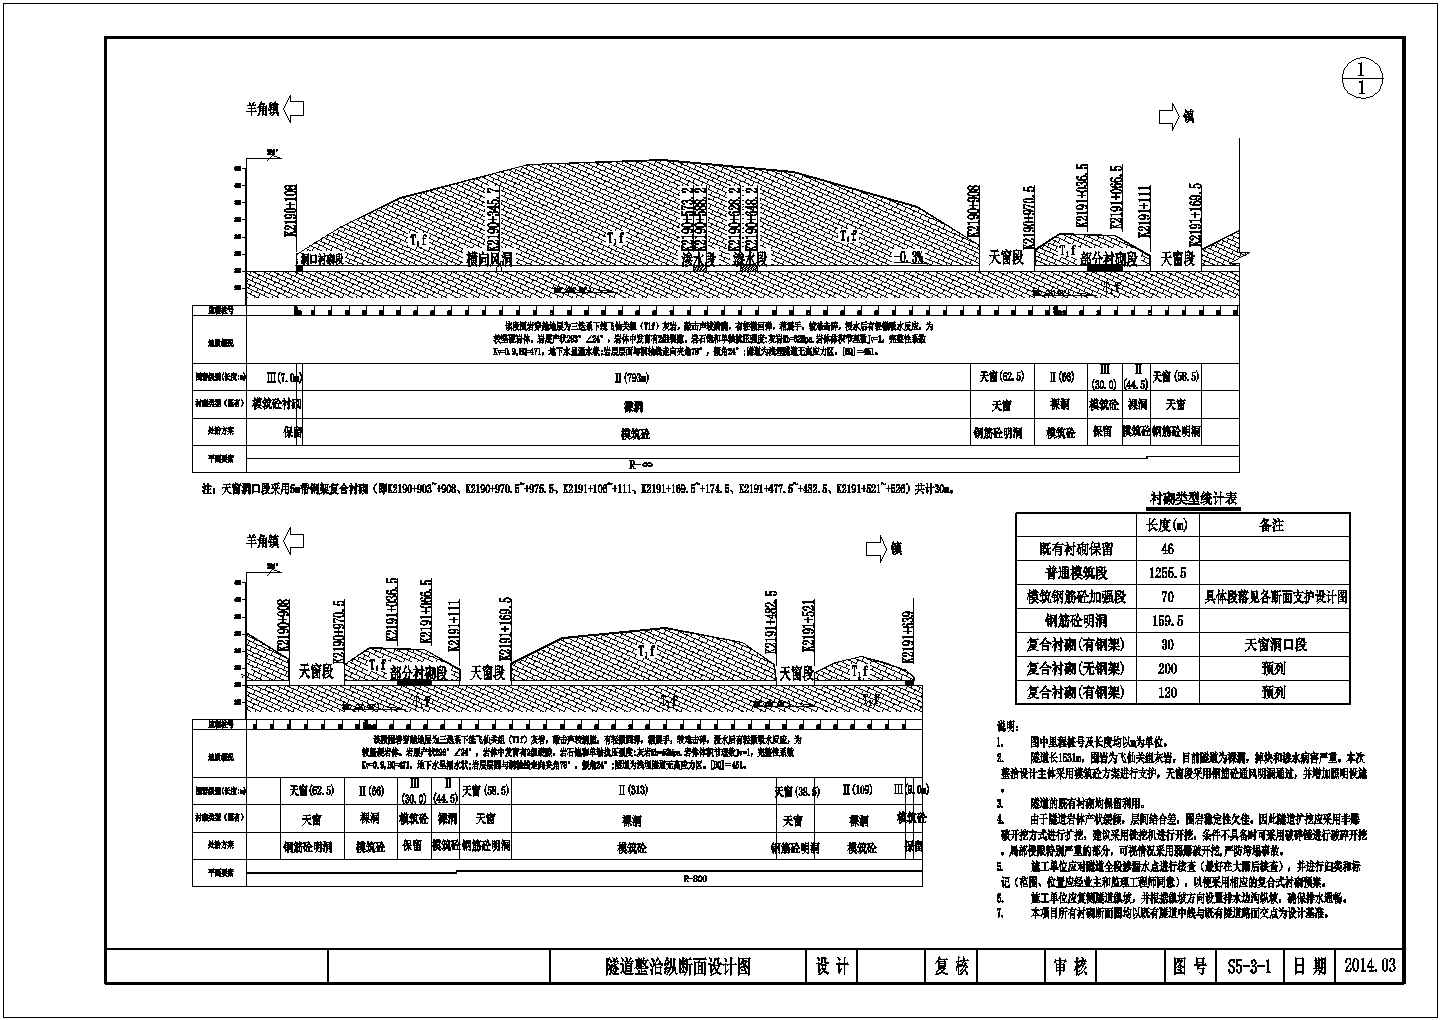 【四川】二级公路单洞双向隧道病害改造设计图